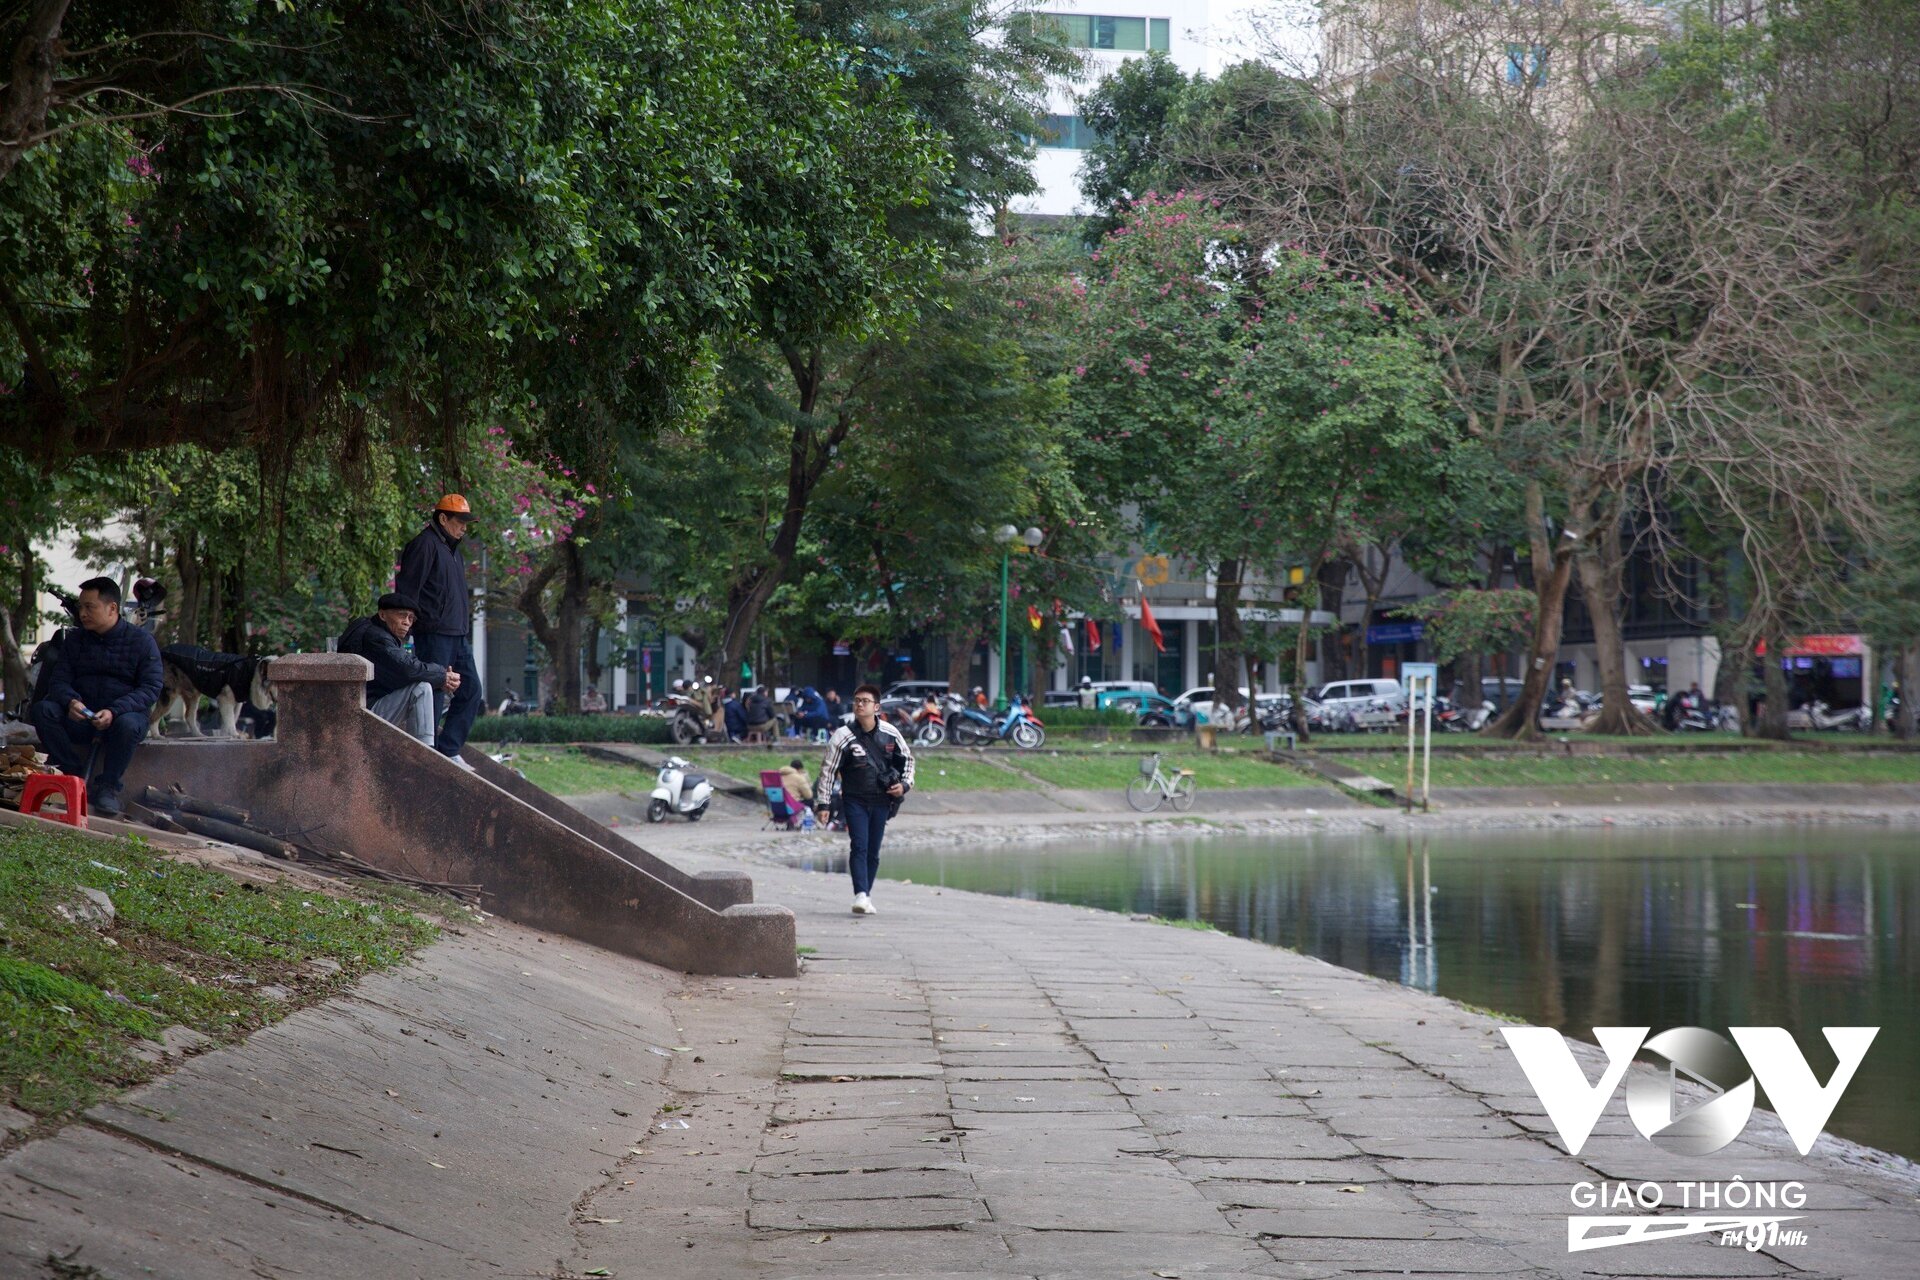 Xung quanh Hồ Thiền Quang, các tuyến đường đều có lòng đường, vỉa hè rộng, cây xanh bóng mát. Khu vực ven hồ là nơi người dân và du khách đến vãn cảnh, tập thể dục và tham gia các hoạt động ngoài trời